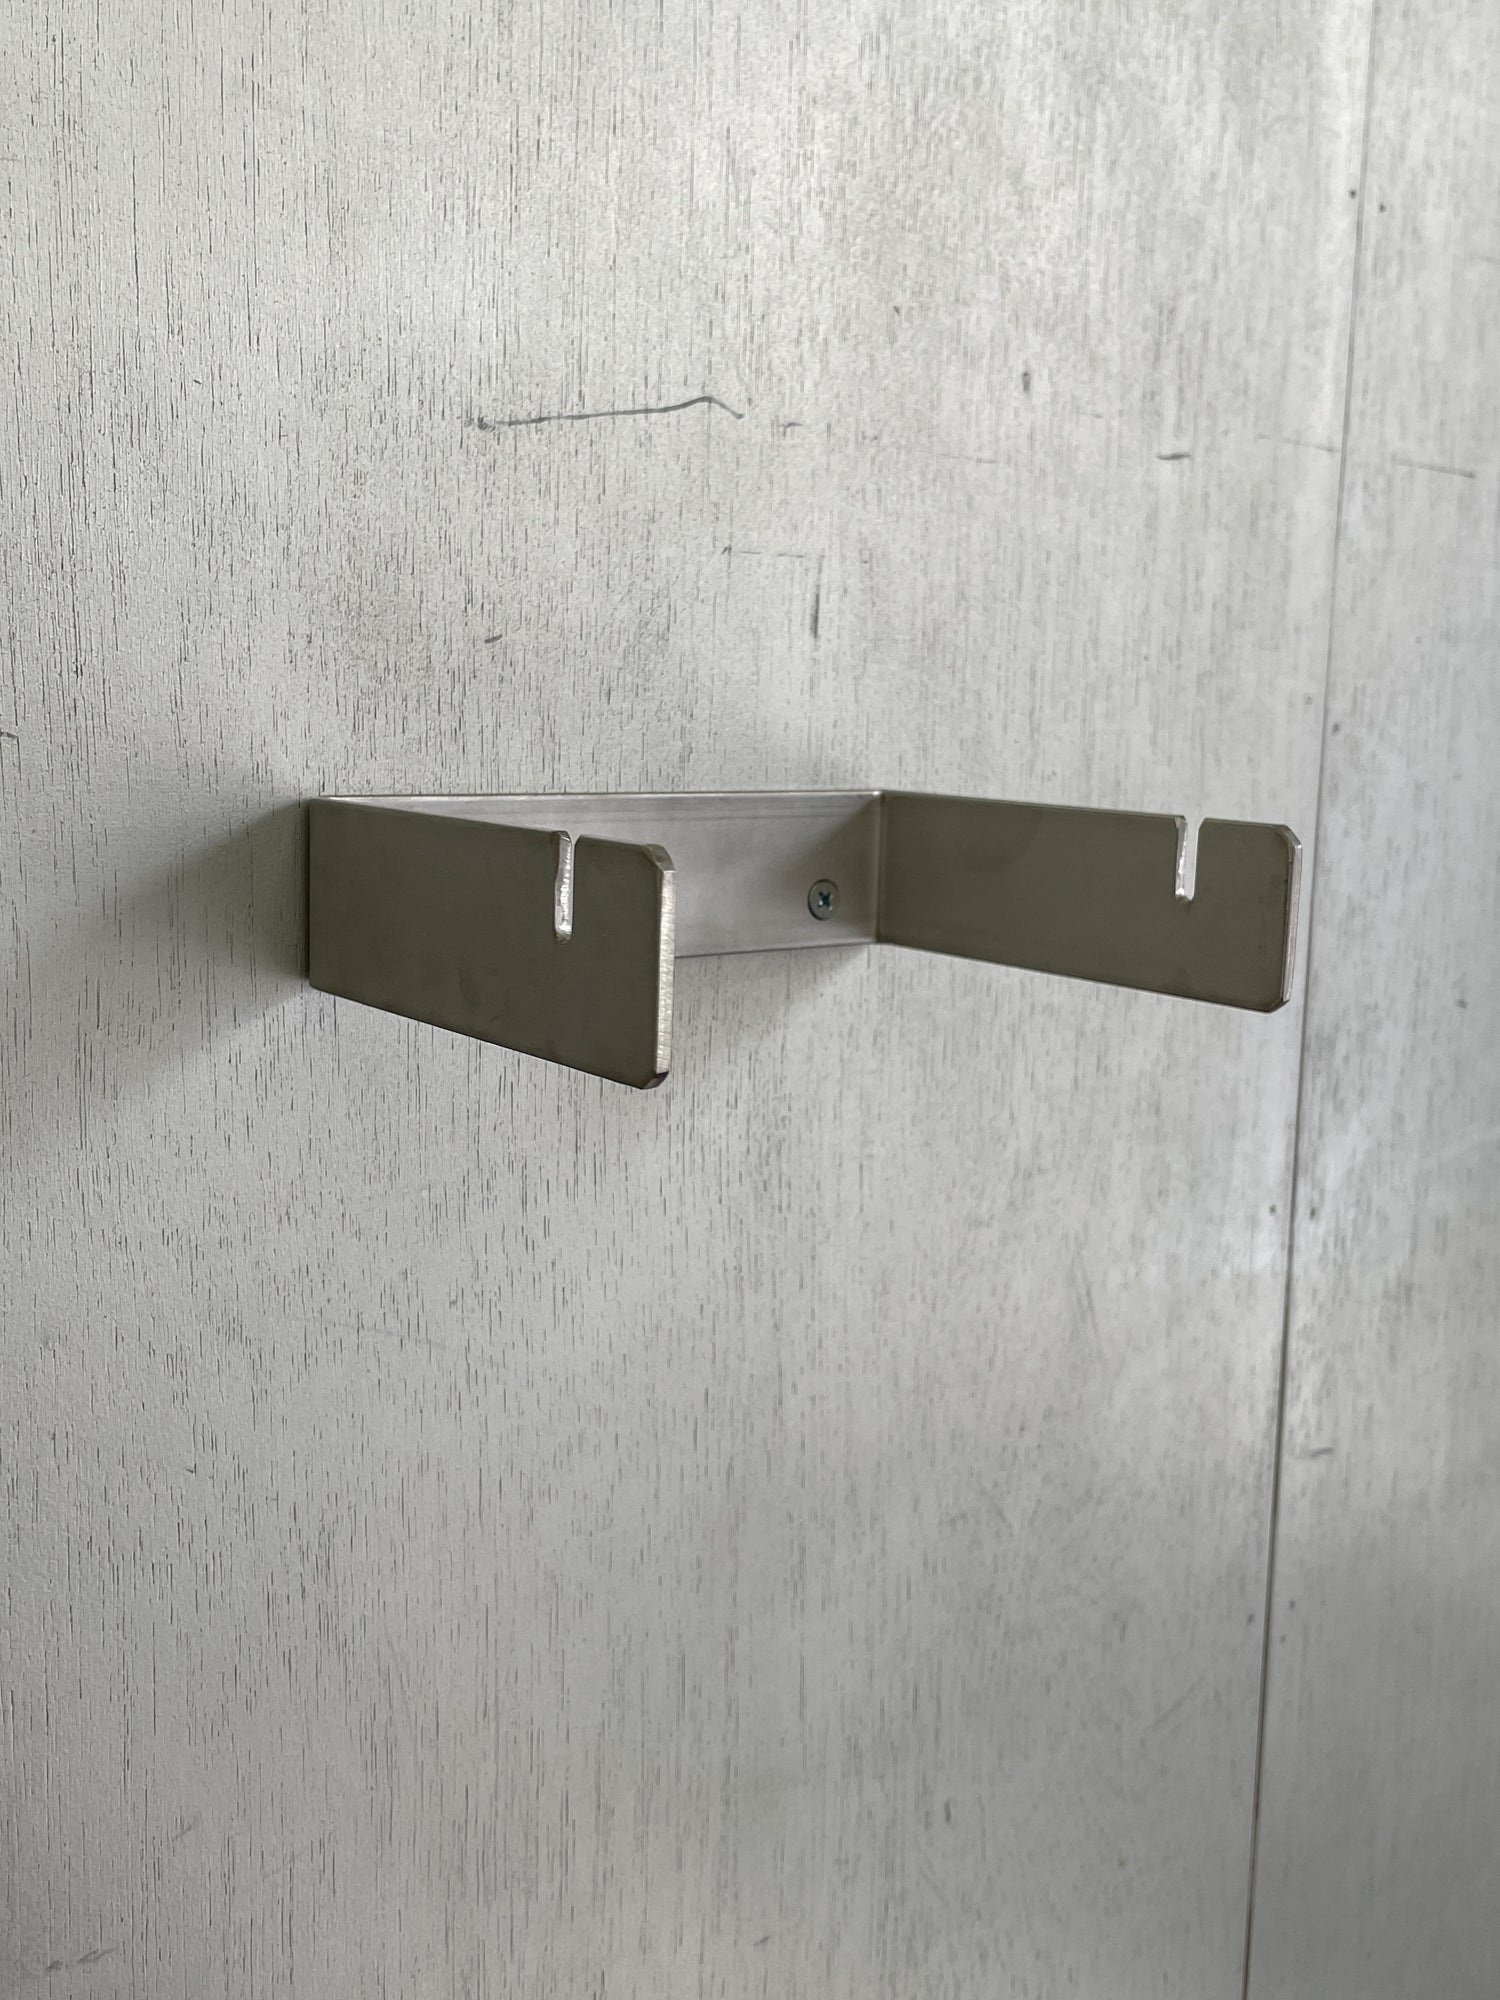 Steel Toilet Paper Holder, BOLTS Hardware Japan